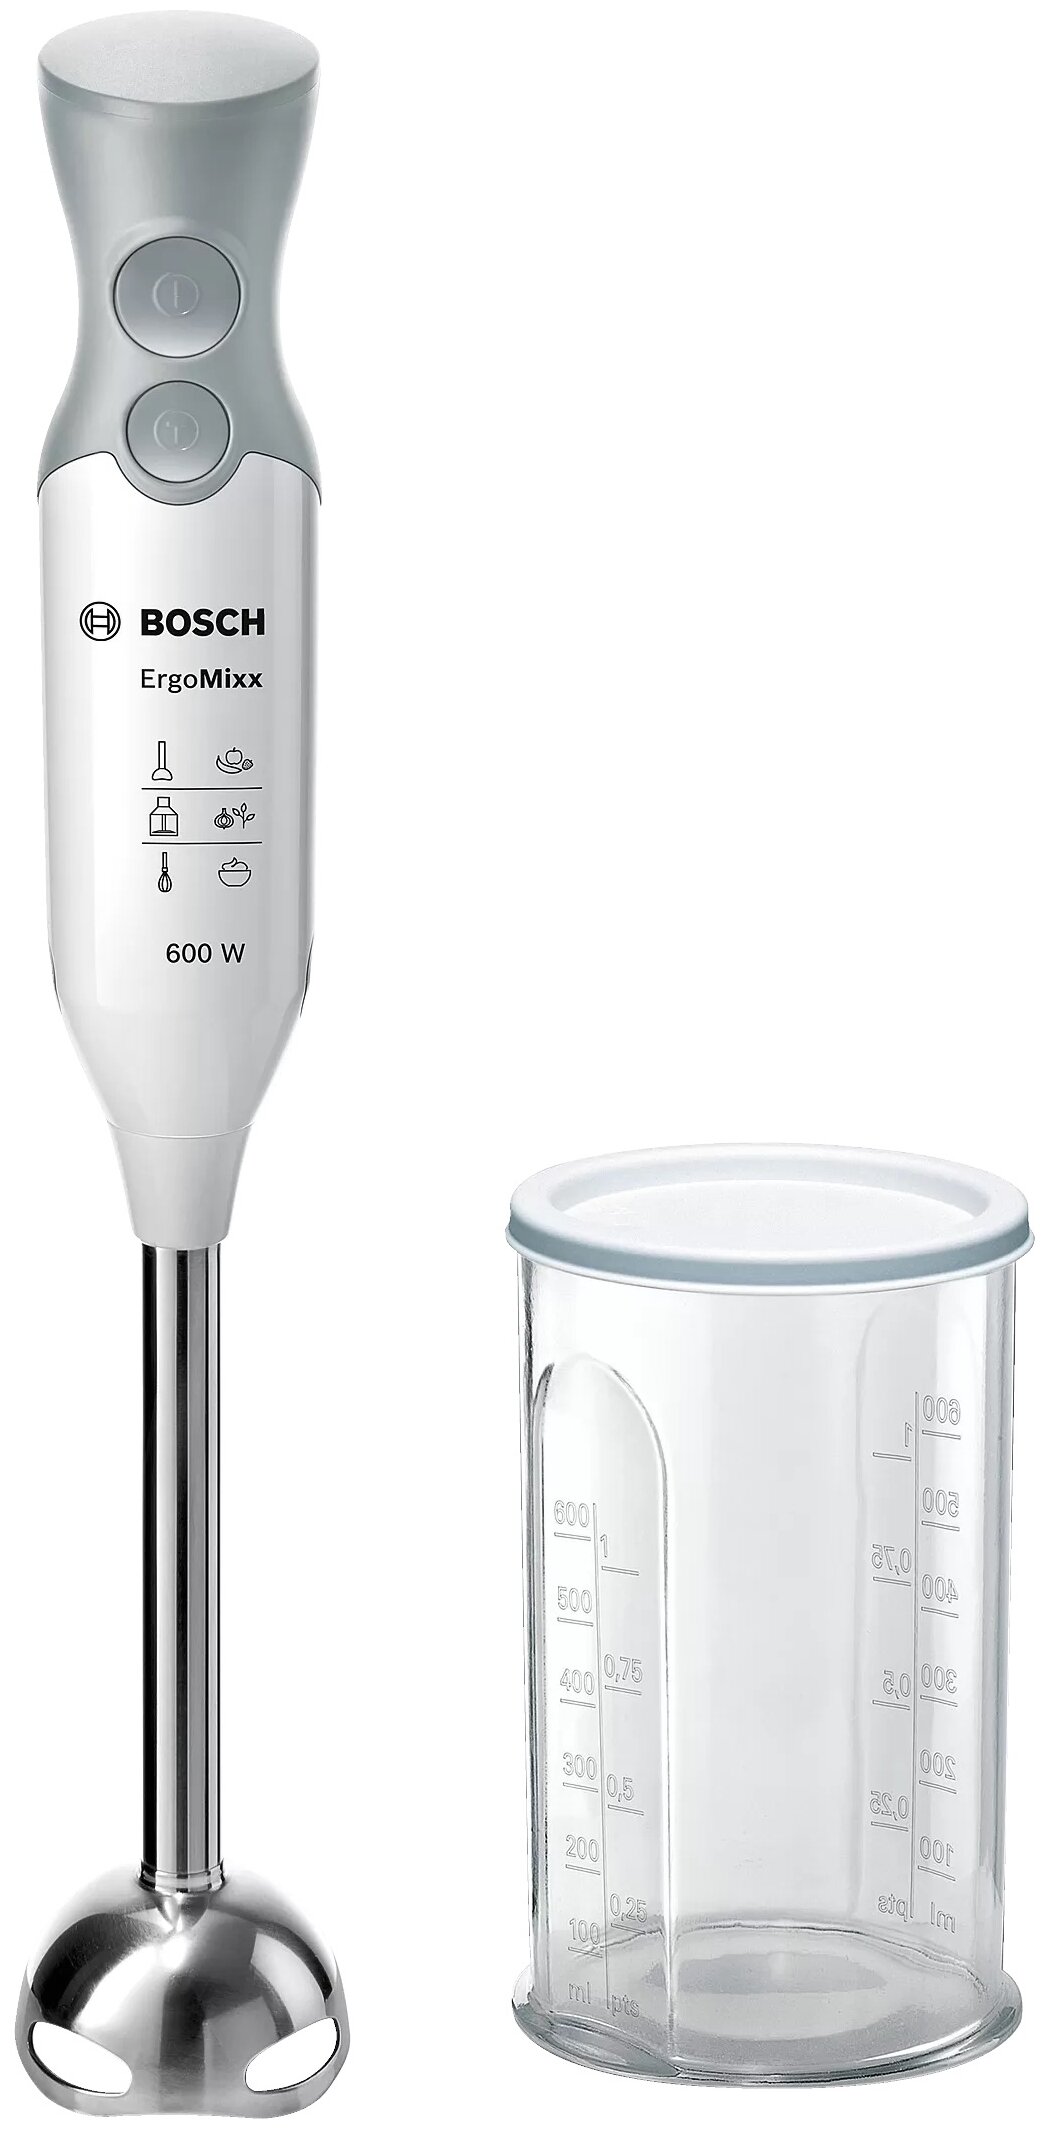 Блендер Bosch "ErgoMixx" MSM66110, погружной, белый